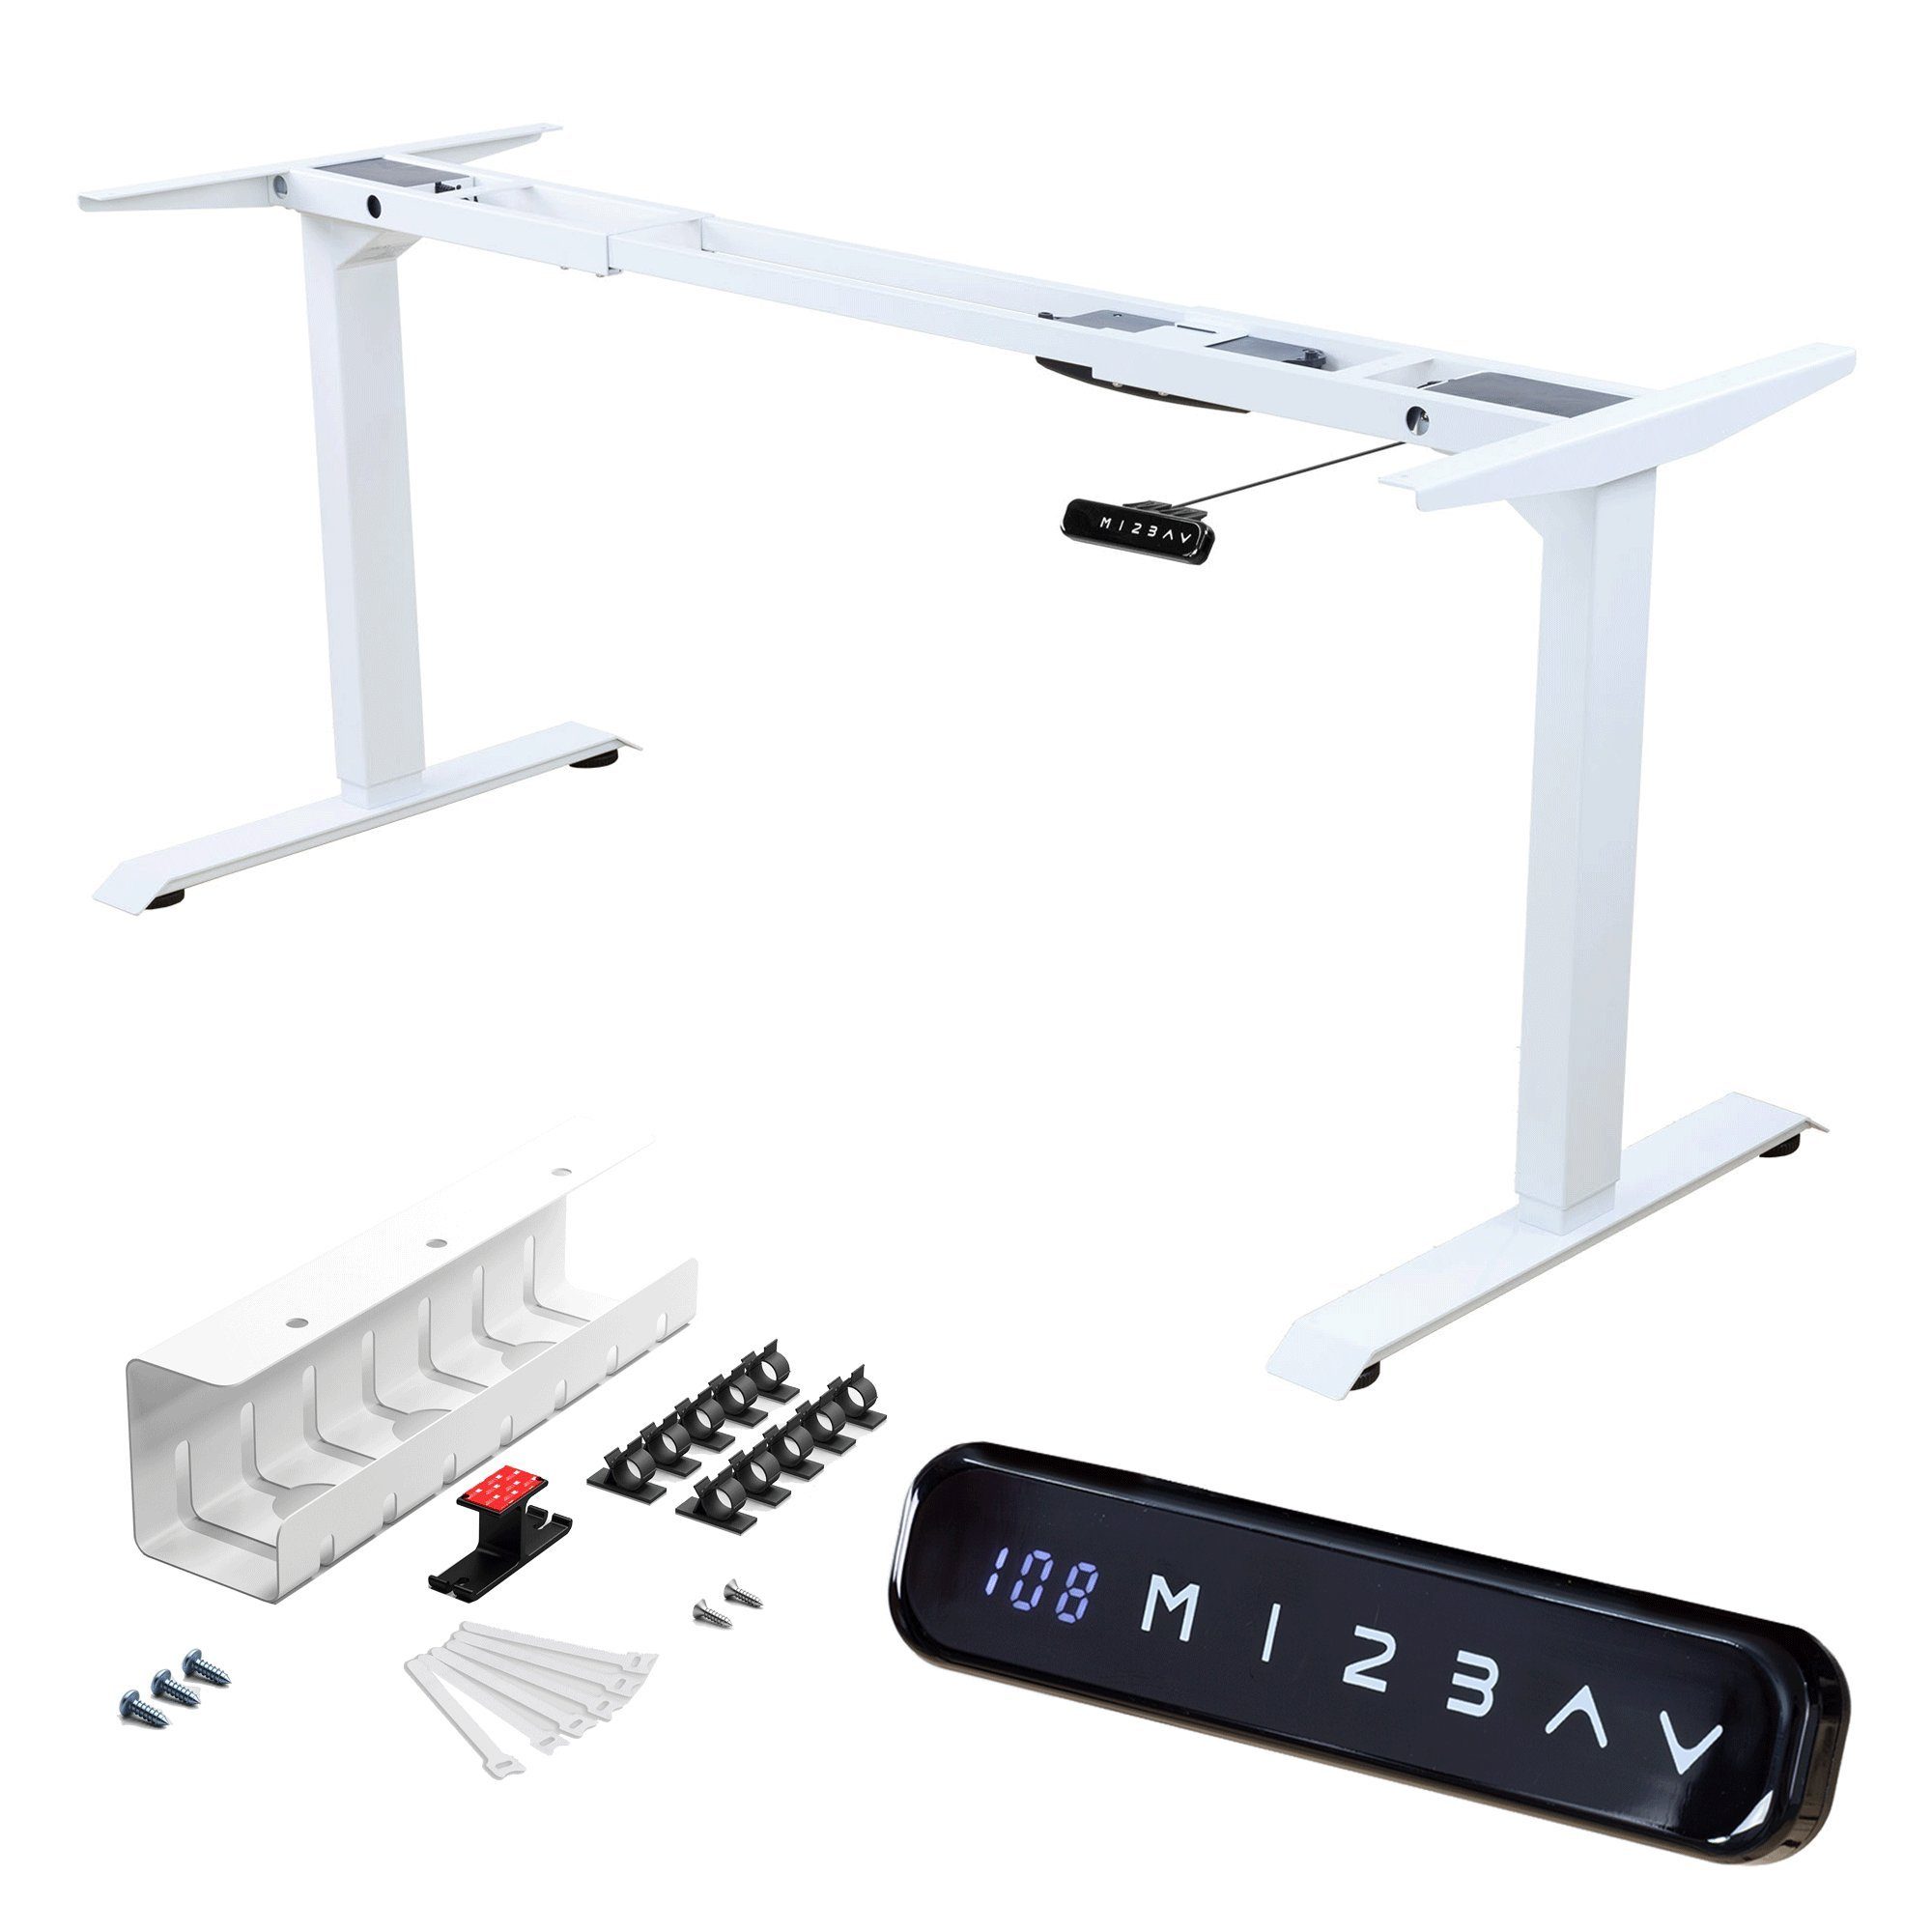 Albatros International Schreibtisch Albatros elektrisch höhenverstellbares Tischgestell mit Kabelkanal S5W (Weiss mit Kabelkanal), mit Memory-Funktion, Kollisionsschutz, Soft-Start/Stop